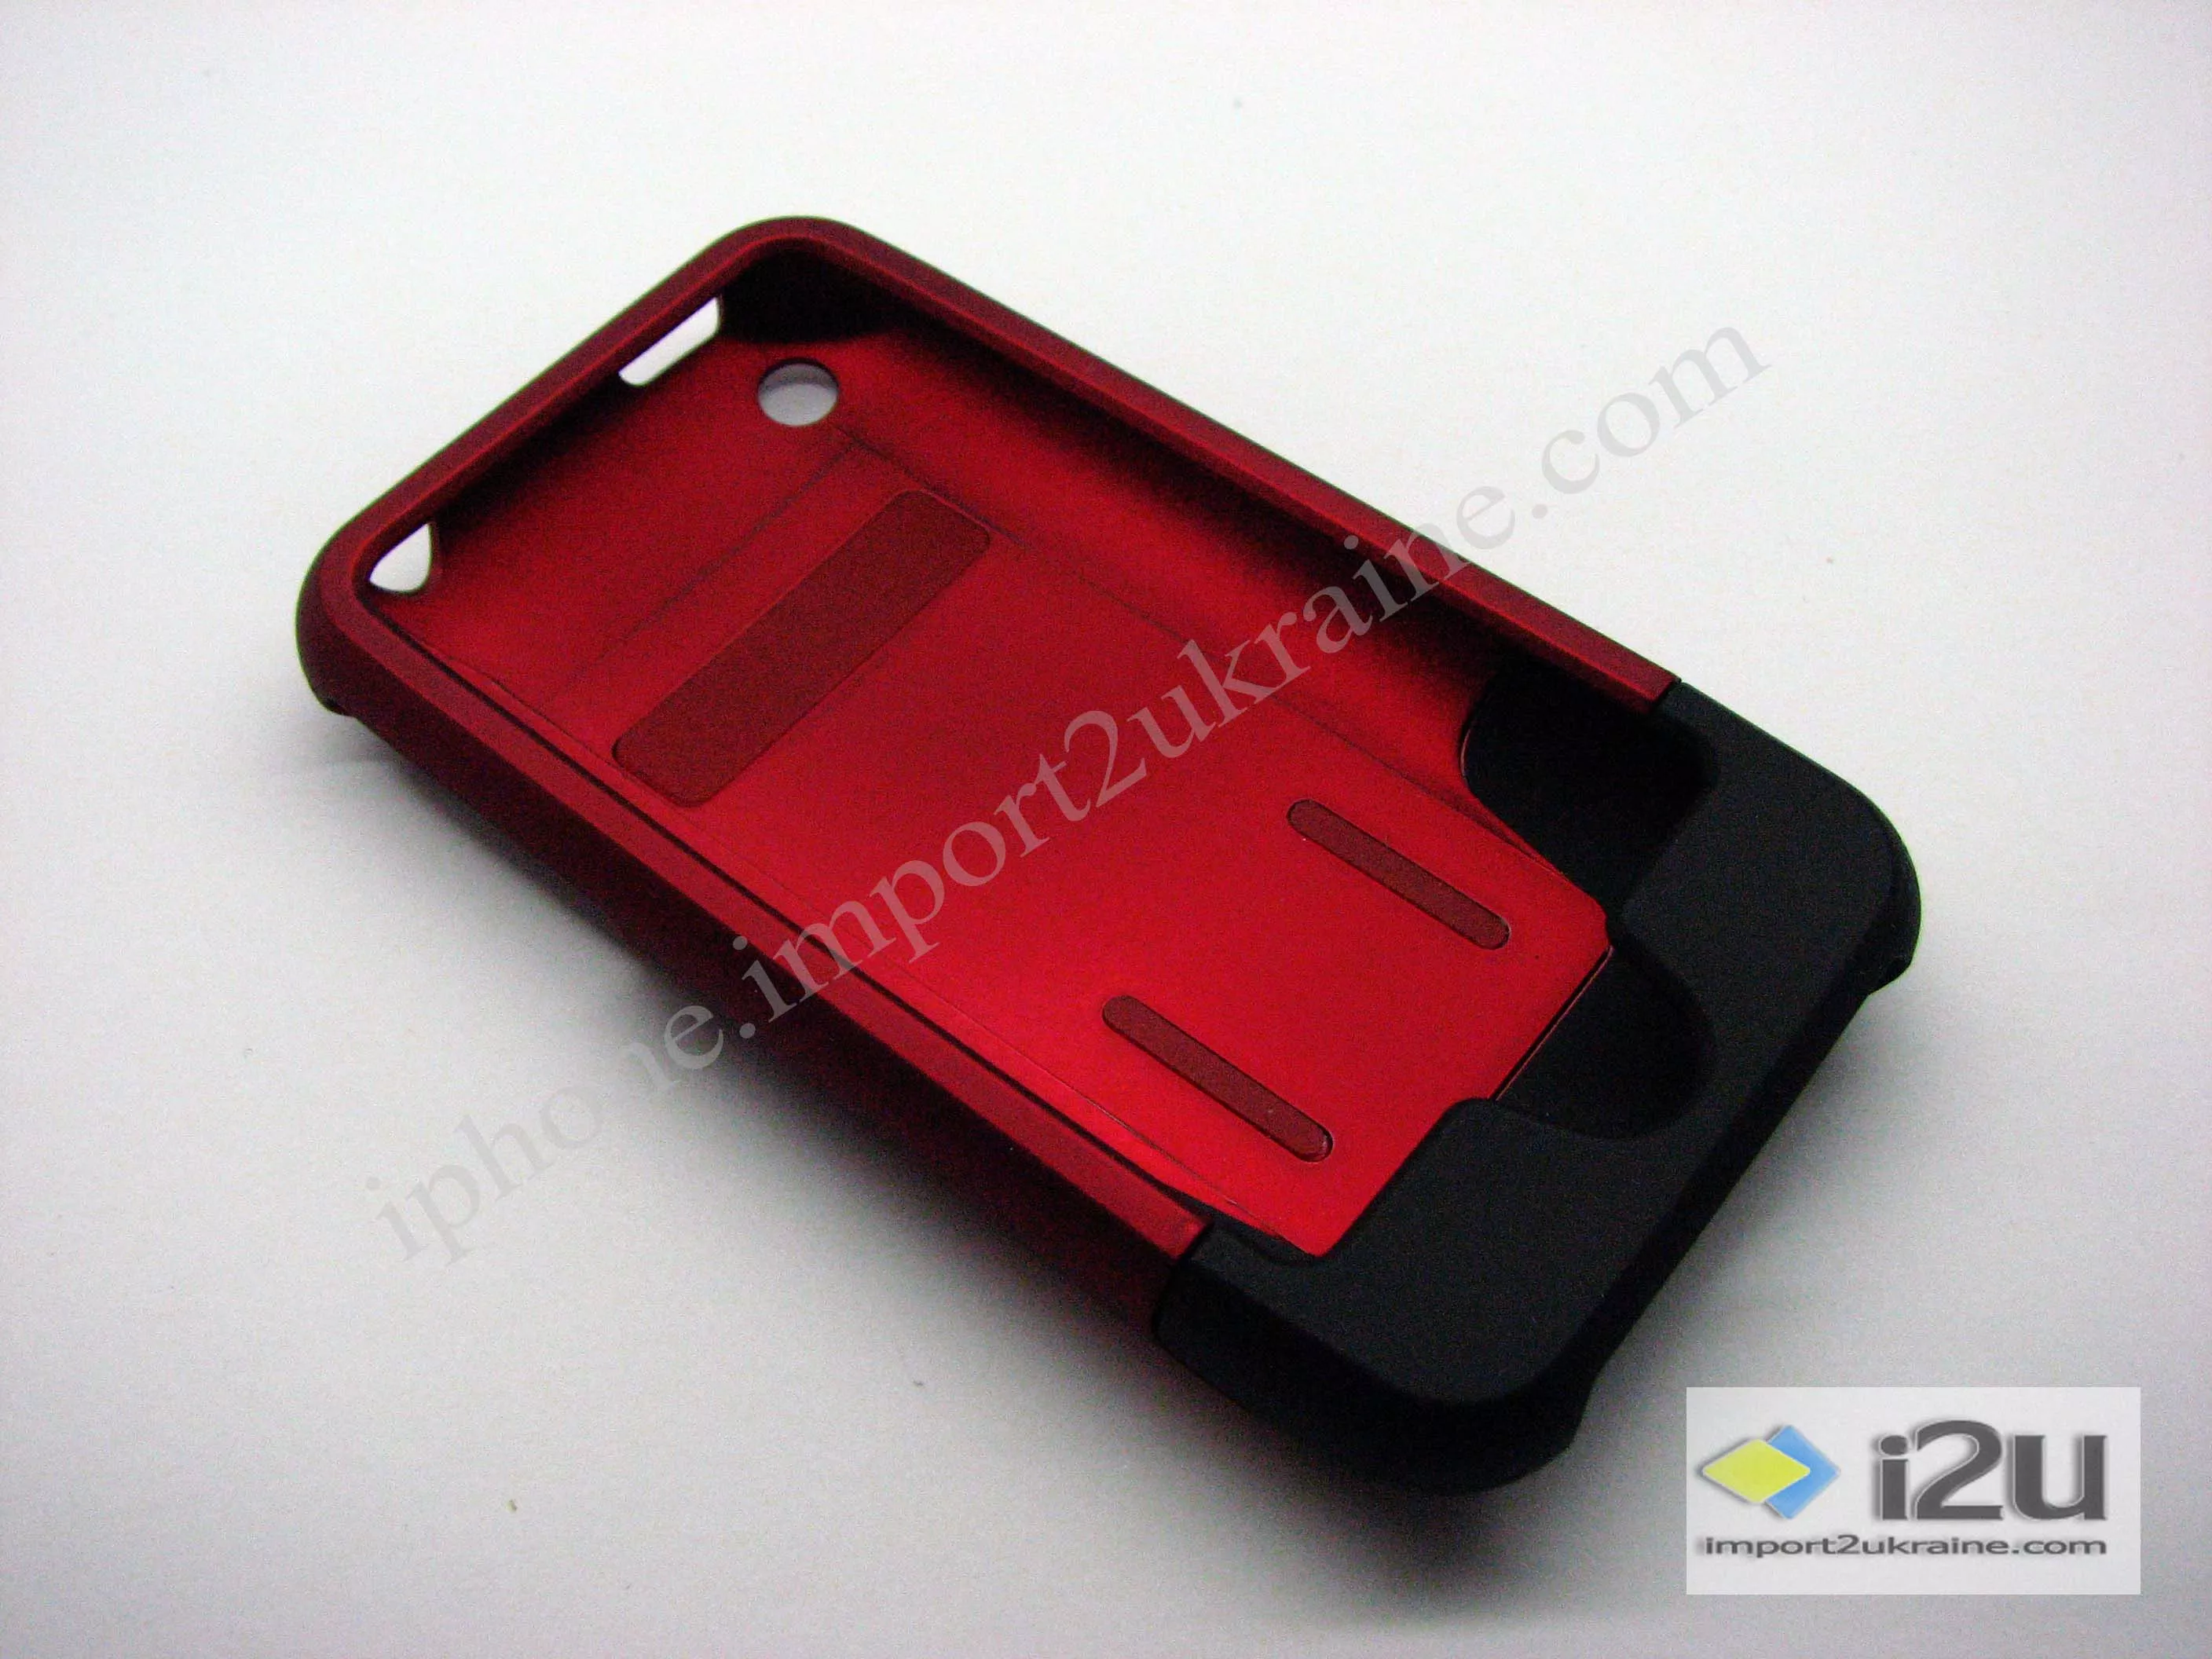 Красный чехол с черной заглушкой внизу iPhone.